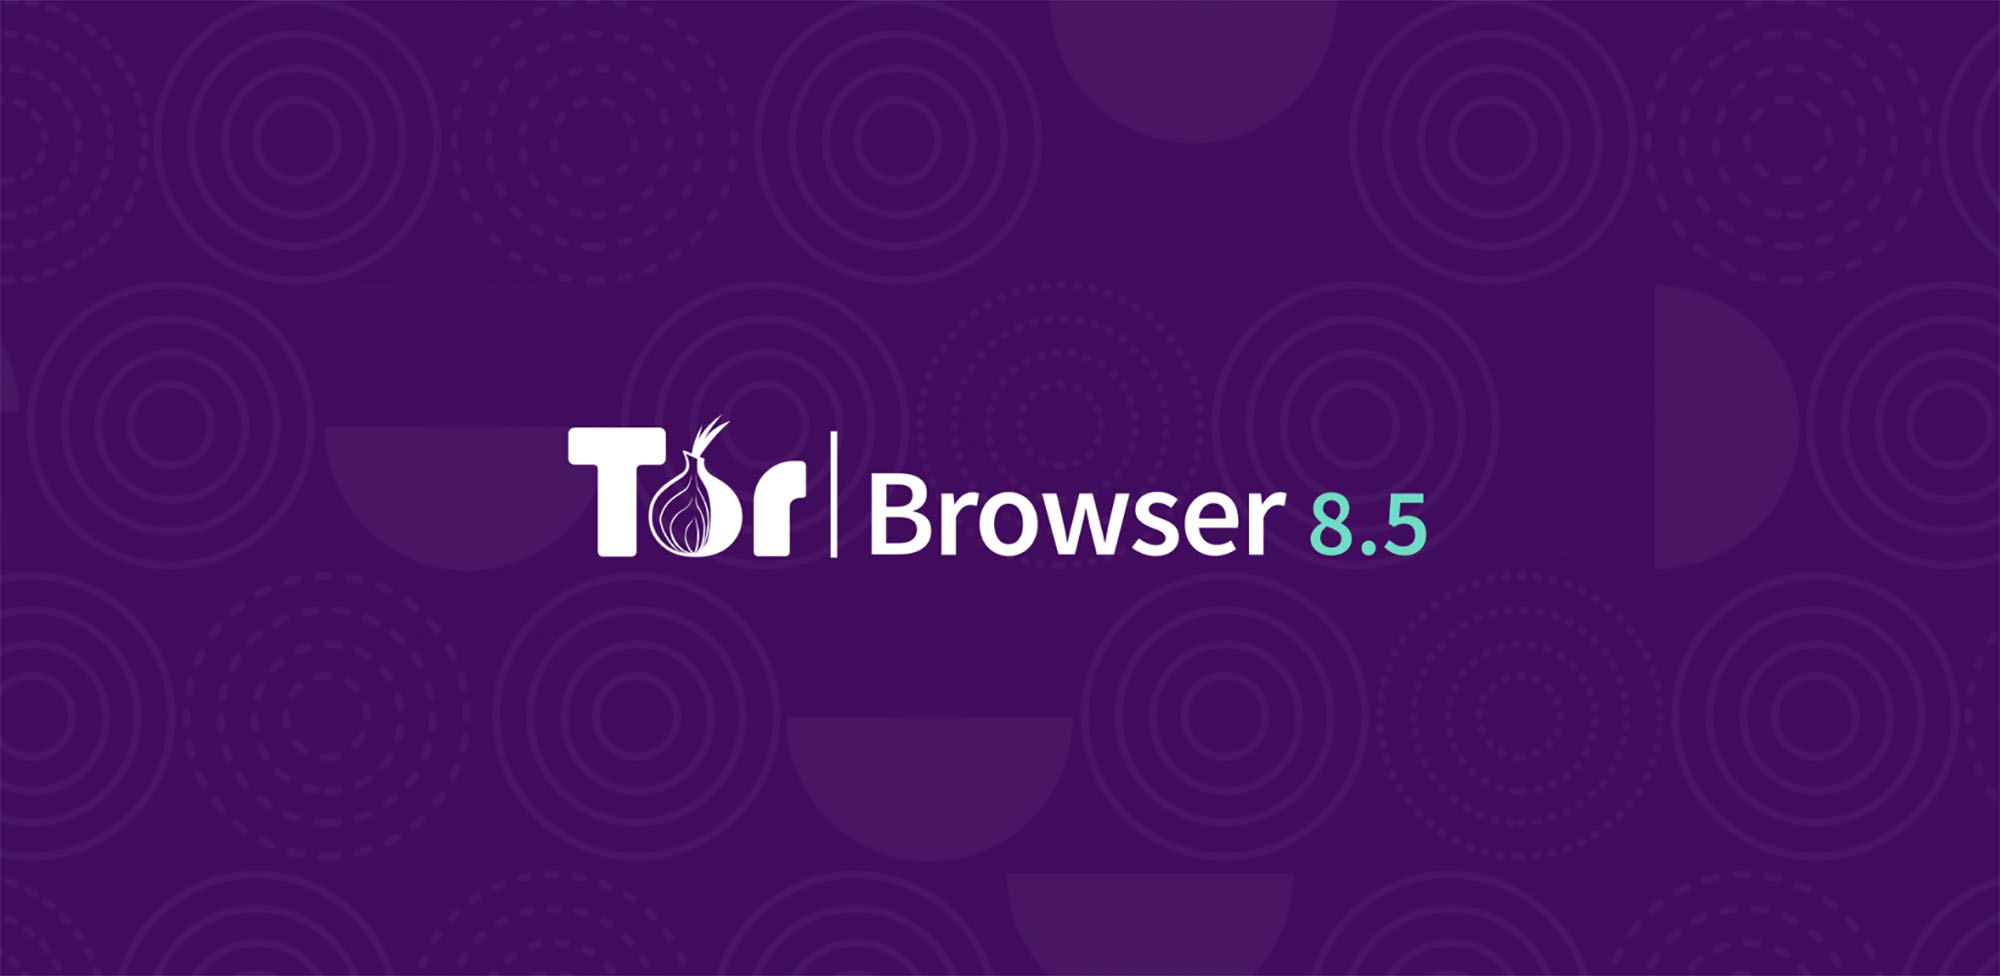 Tor browser информация mega браузеры помимо тора mega